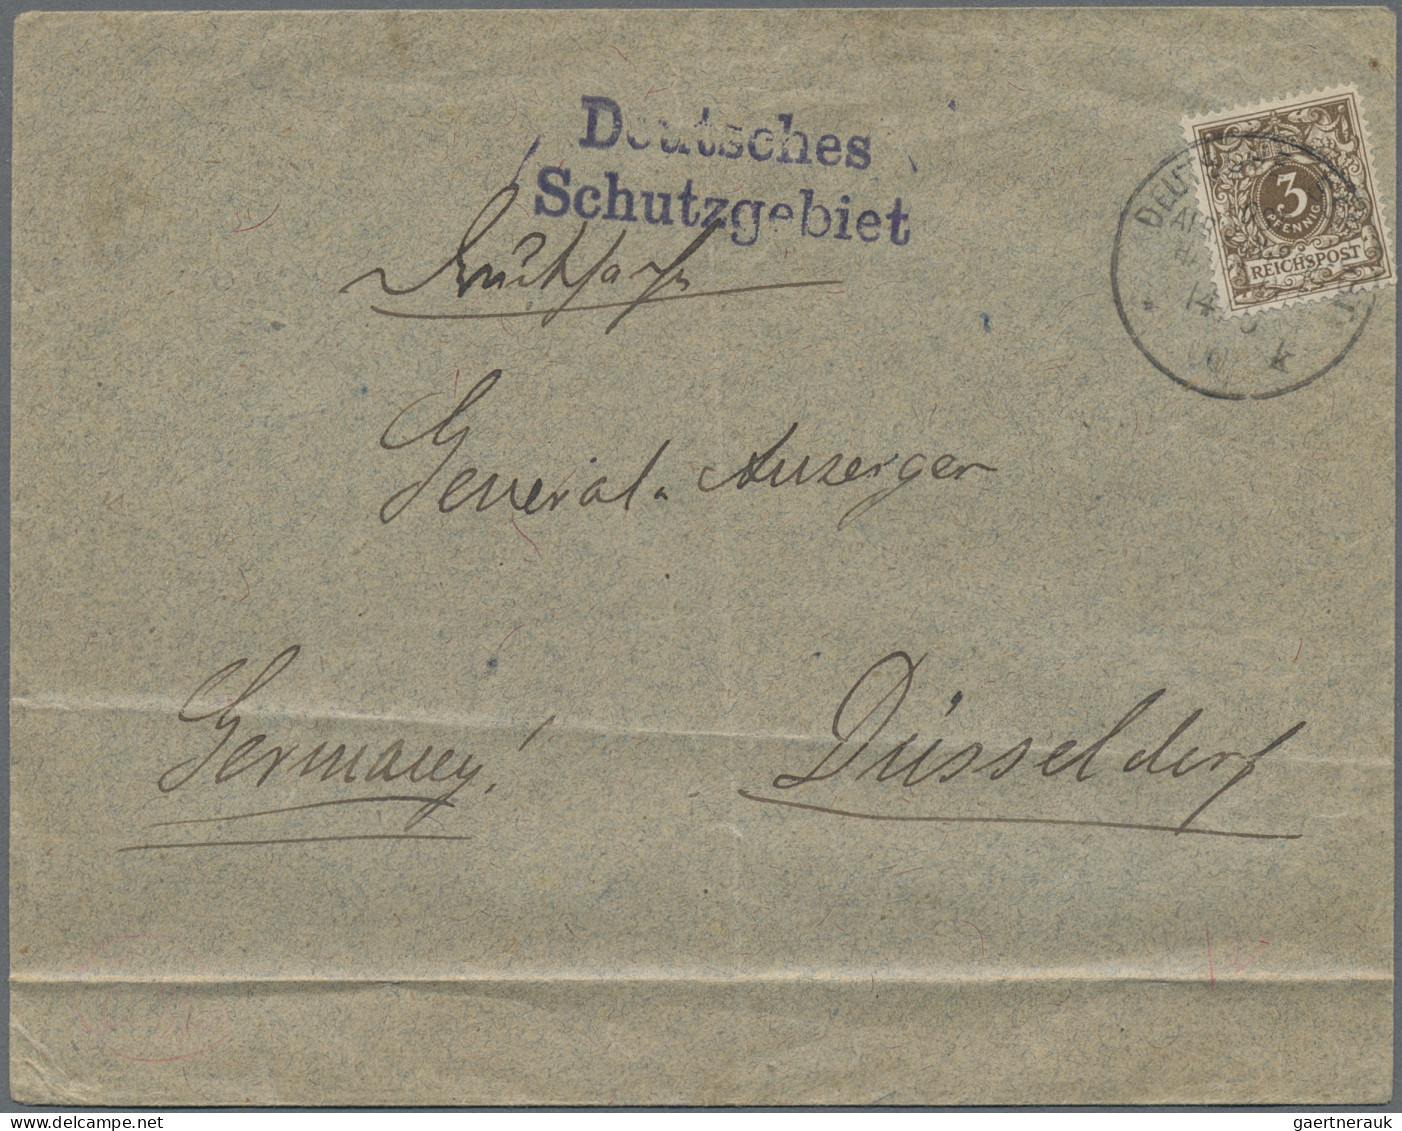 Deutsch-Ostafrika: 1896/1912, Partie von 18 Briefen und Karten, soweit ersichtli